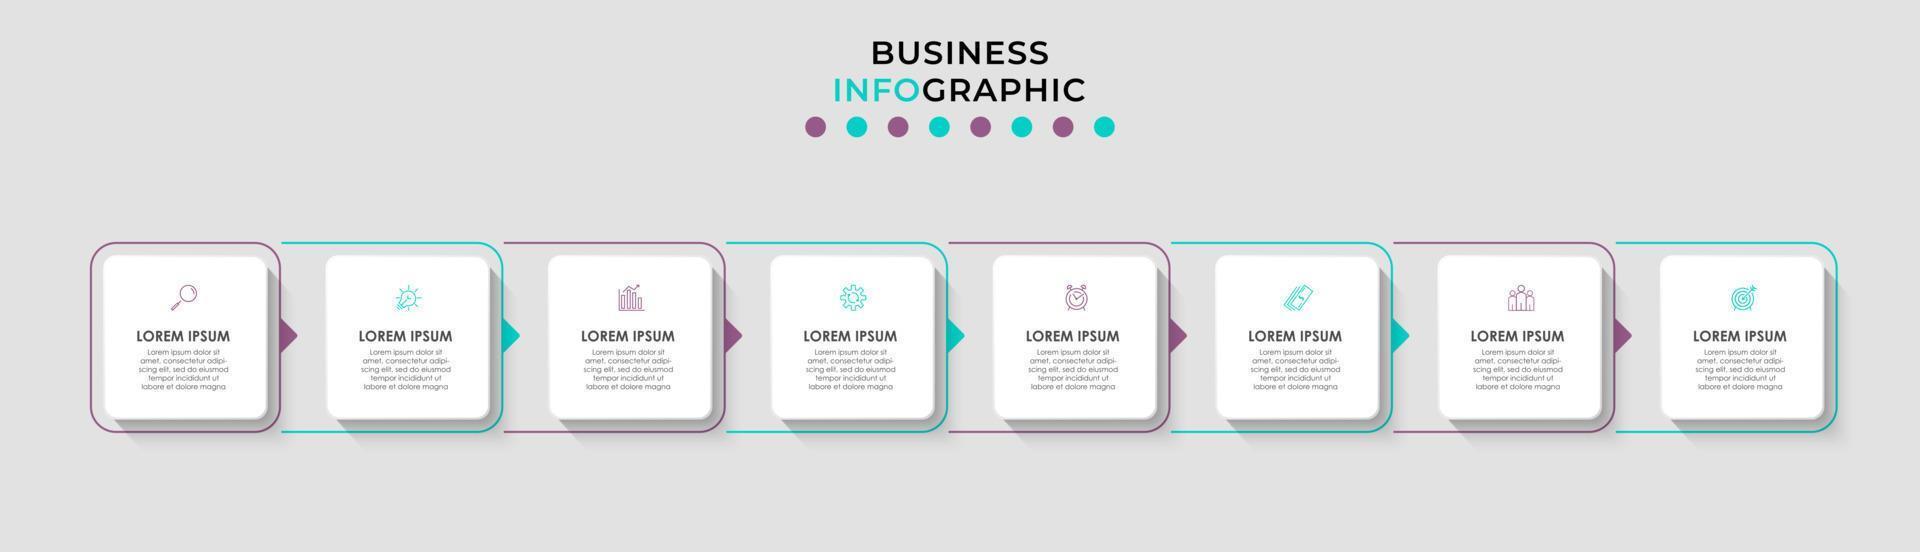 vector infographic ontwerp bedrijf sjabloon met pictogrammen en 8 opties of stappen. kan worden gebruikt voor werkwijze diagram, presentaties, workflow lay-out, banier, stromen grafiek, info diagram